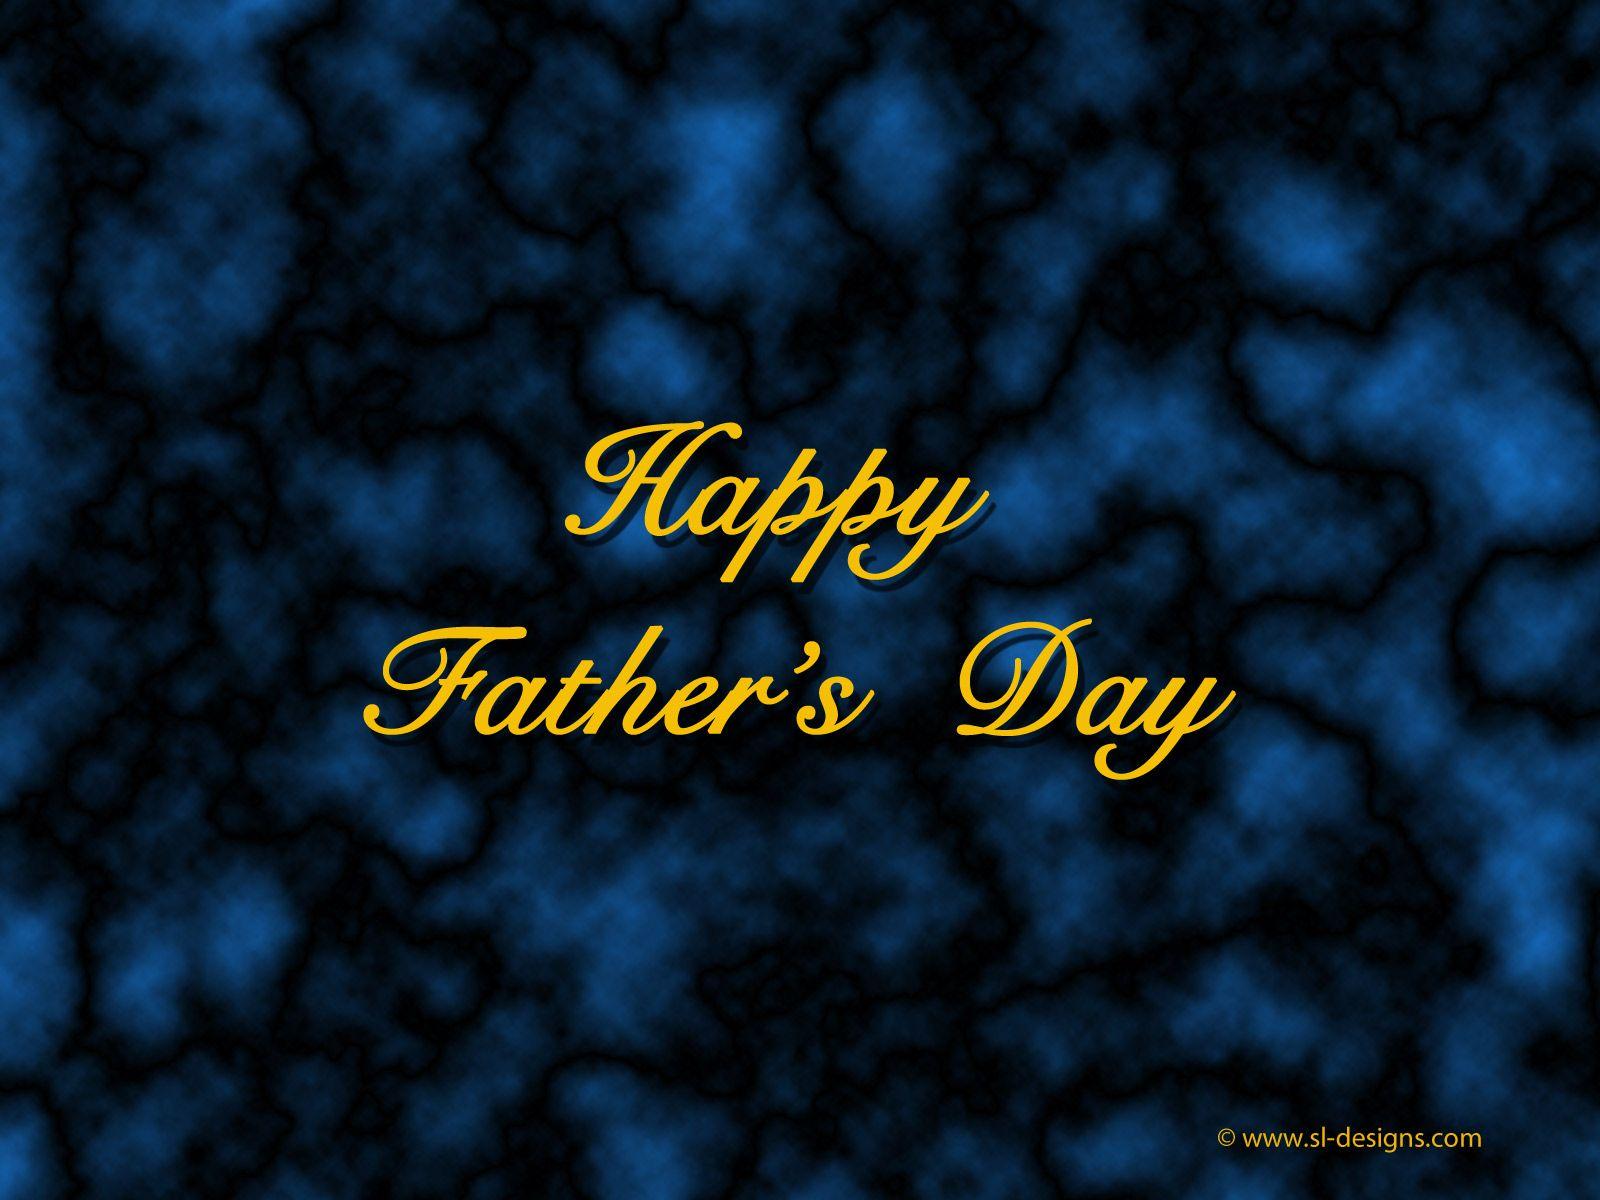 Happy Father's Day Wallpaper. SL Designs